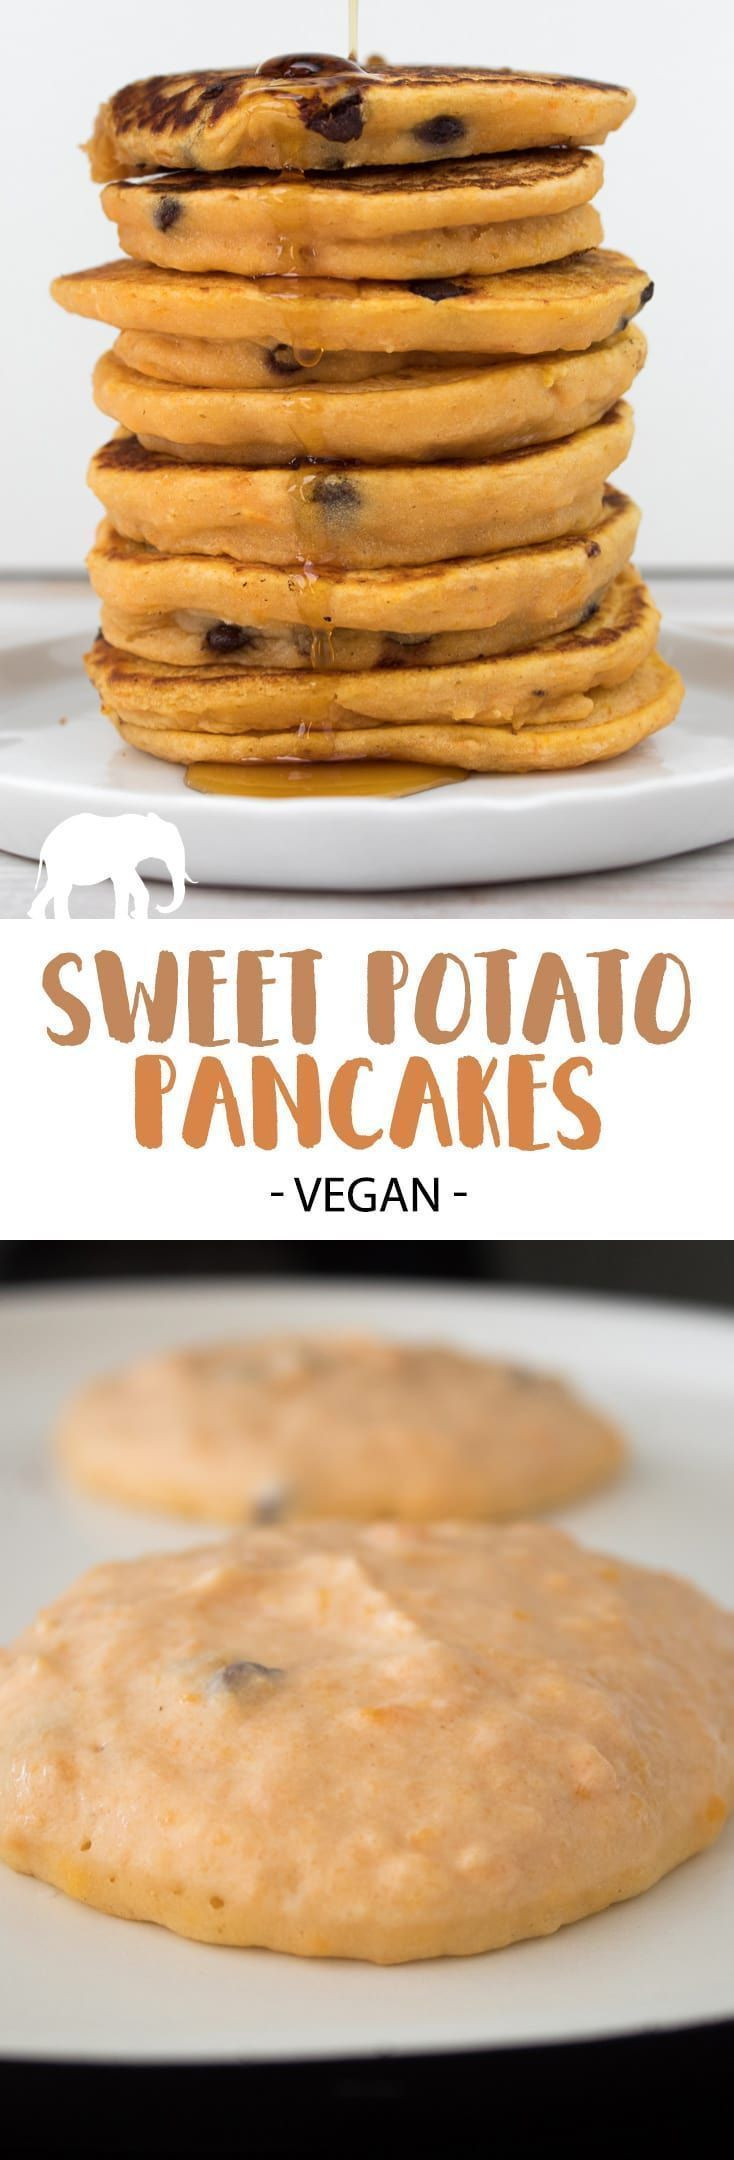 Sweet Potato Pancakes Vegan
 Recipe for delicious fluffy Vegan Sweet Potato Pancakes